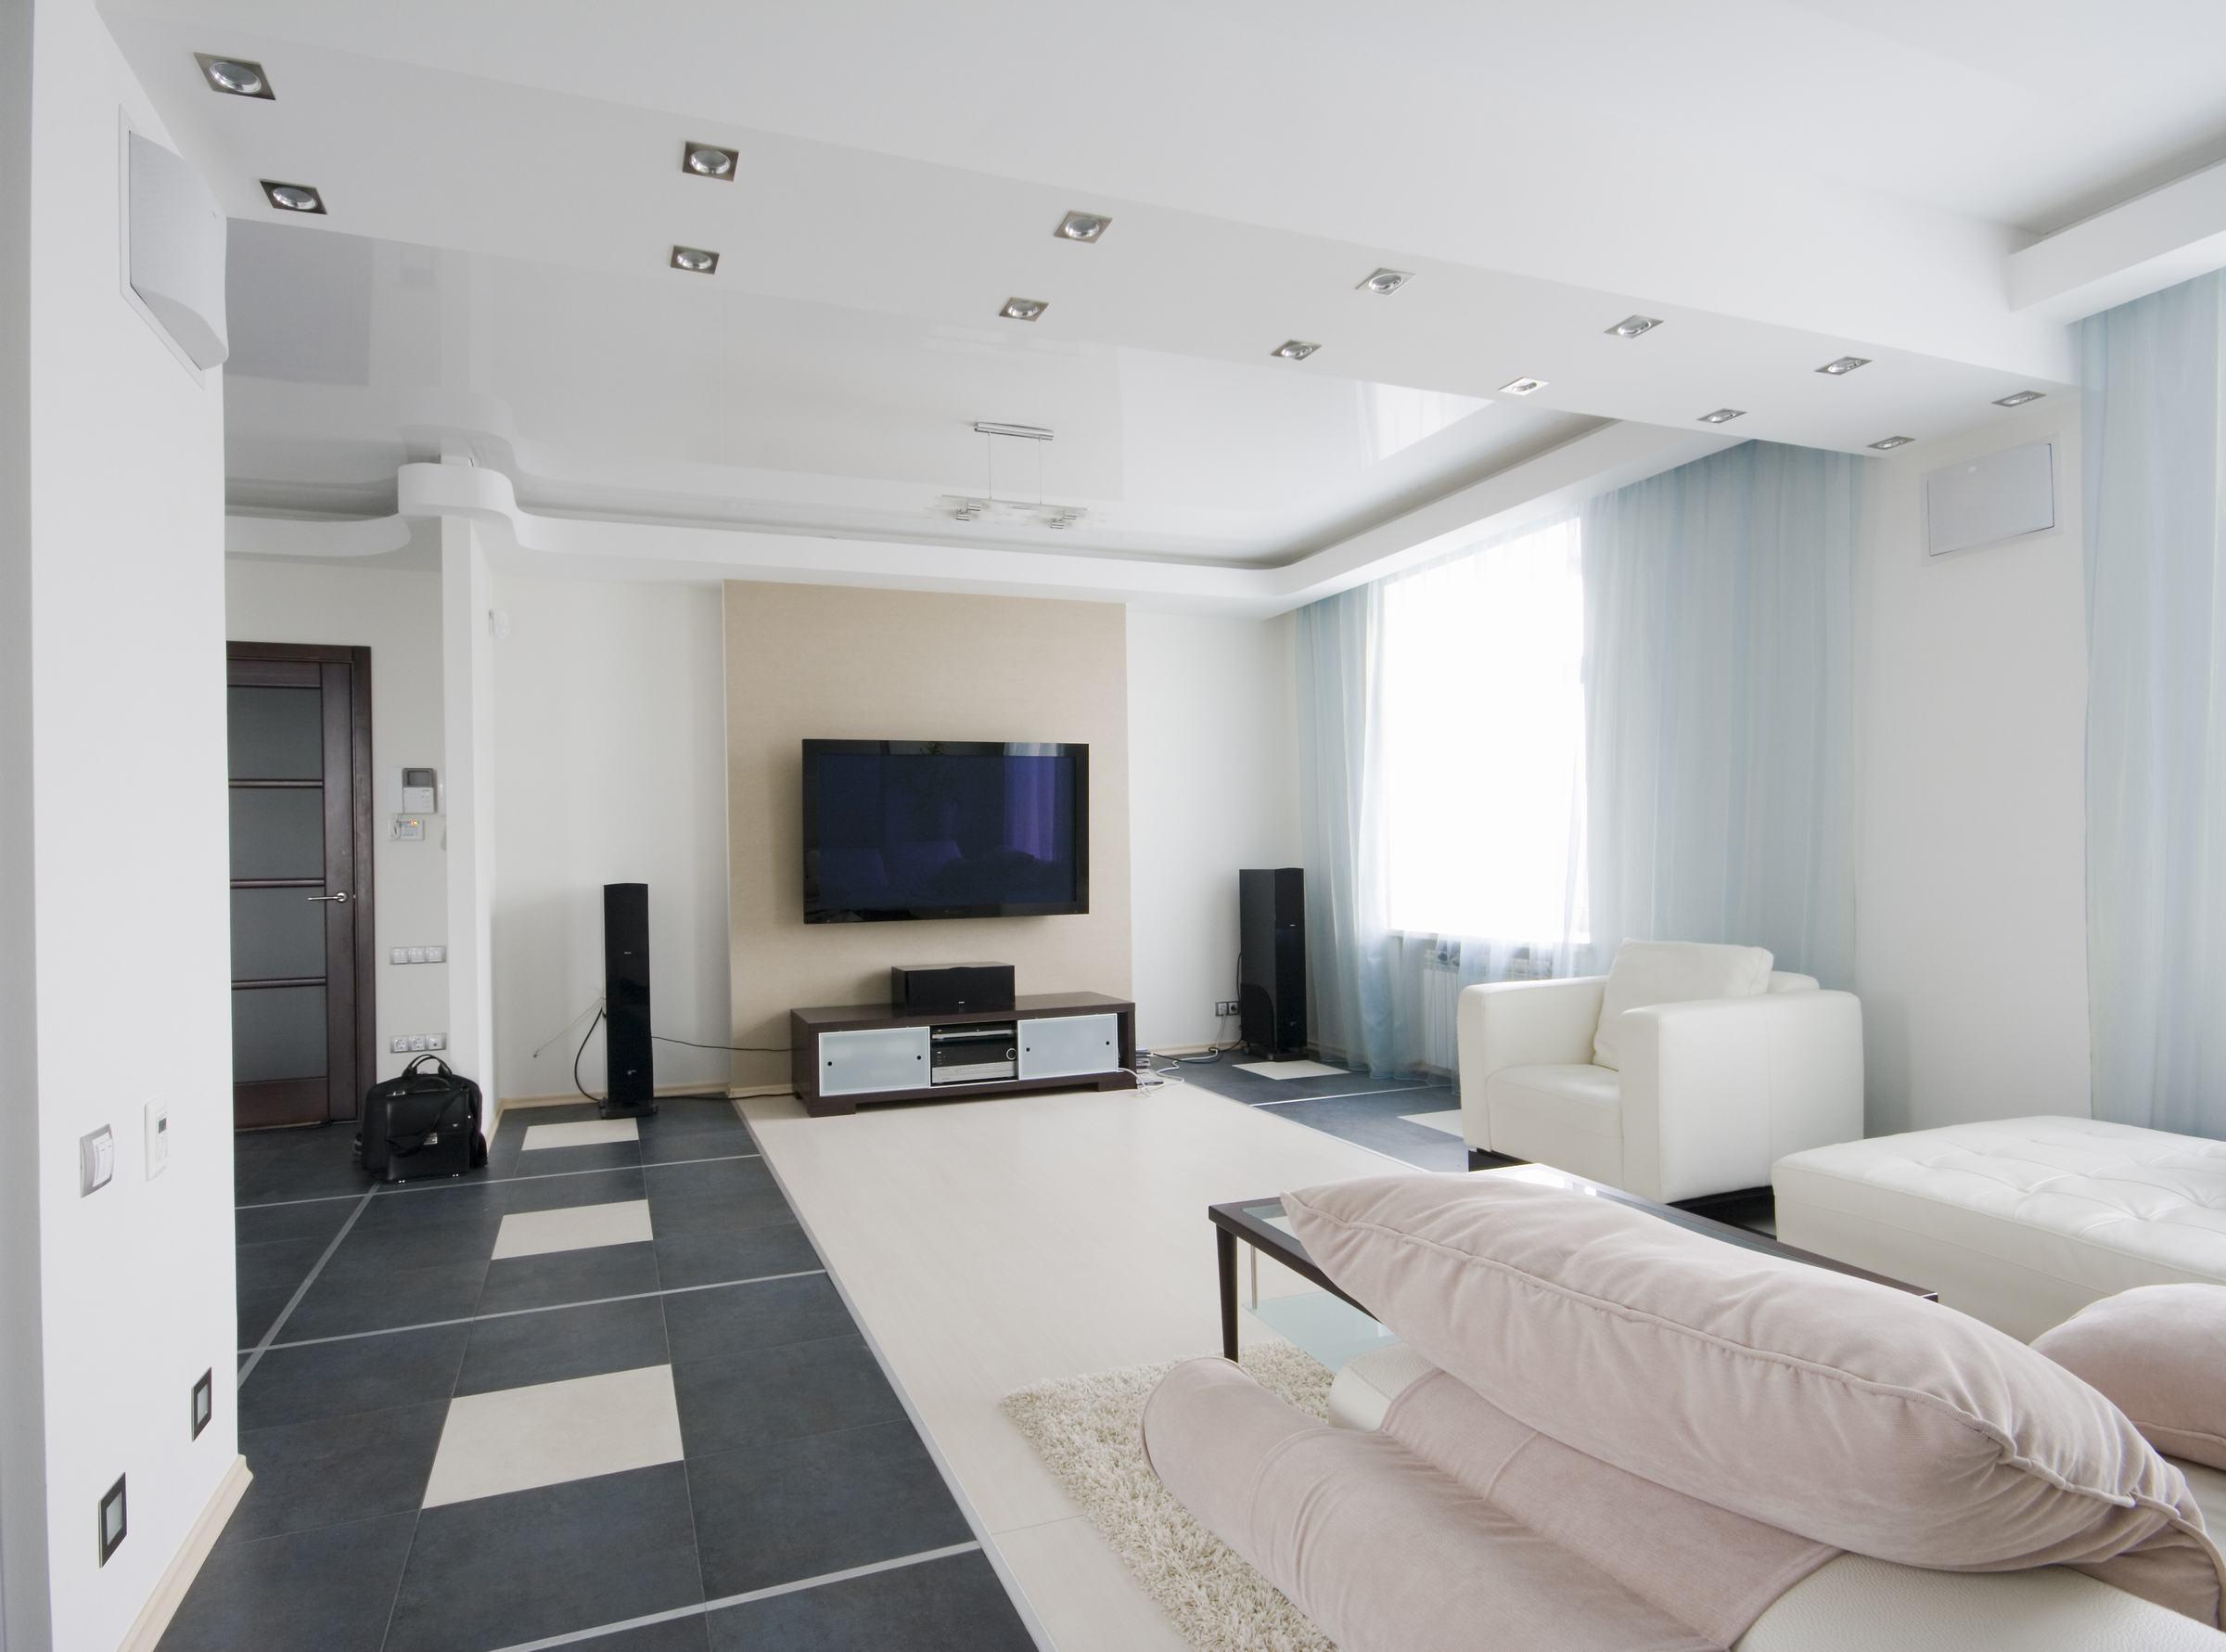 Mẫu trần thạch cao phòng khách hiện đại - Chào đón năm mới 2024 với một phong cách mới cho phòng khách của bạn với mẫu trần thạch cao phòng khách hiện đại. Kiểu dáng độc đáo, sắc sảo cùng gam màu tinh tế sẽ khiến không gian sống của bạn trở nên ấn tượng hơn bao giờ hết.